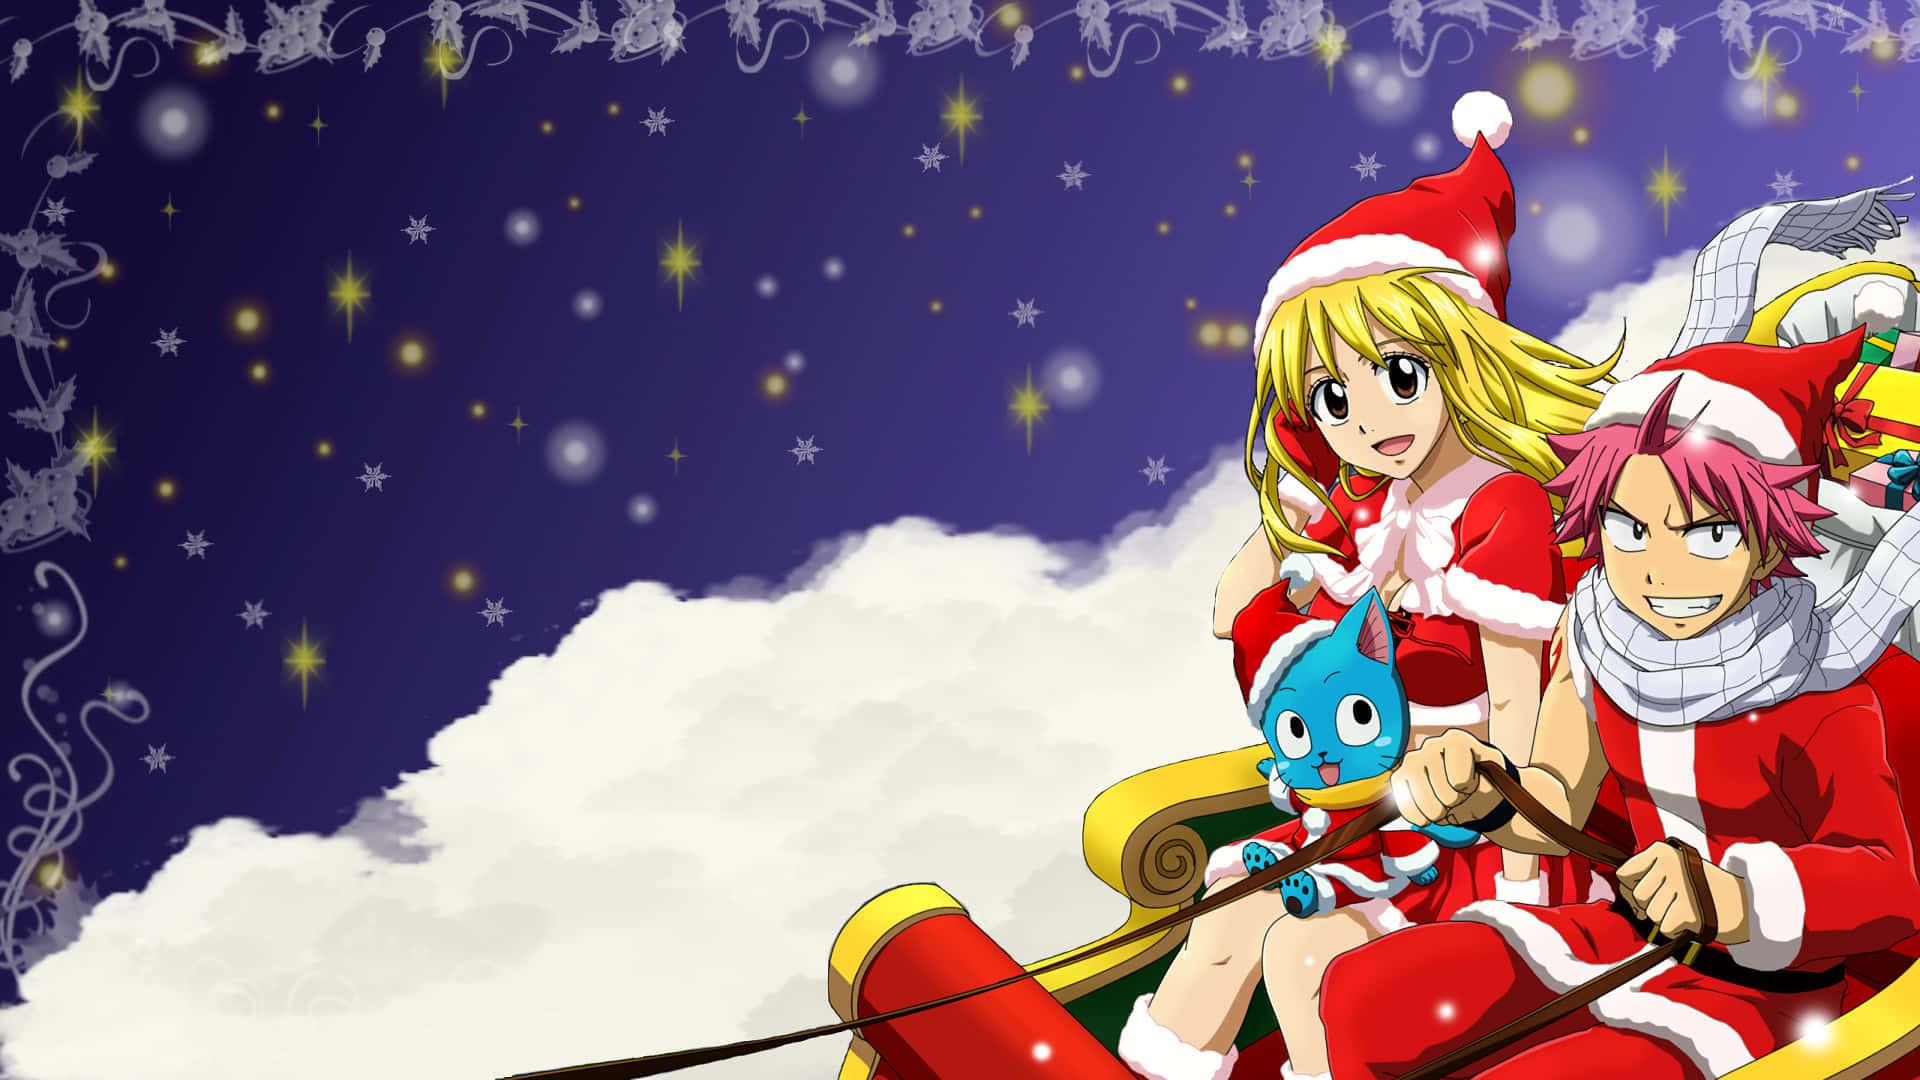 Feiernsie Anime Weihnachten Mit Einem Zauberhaften Winterlichen Nachthimmel!